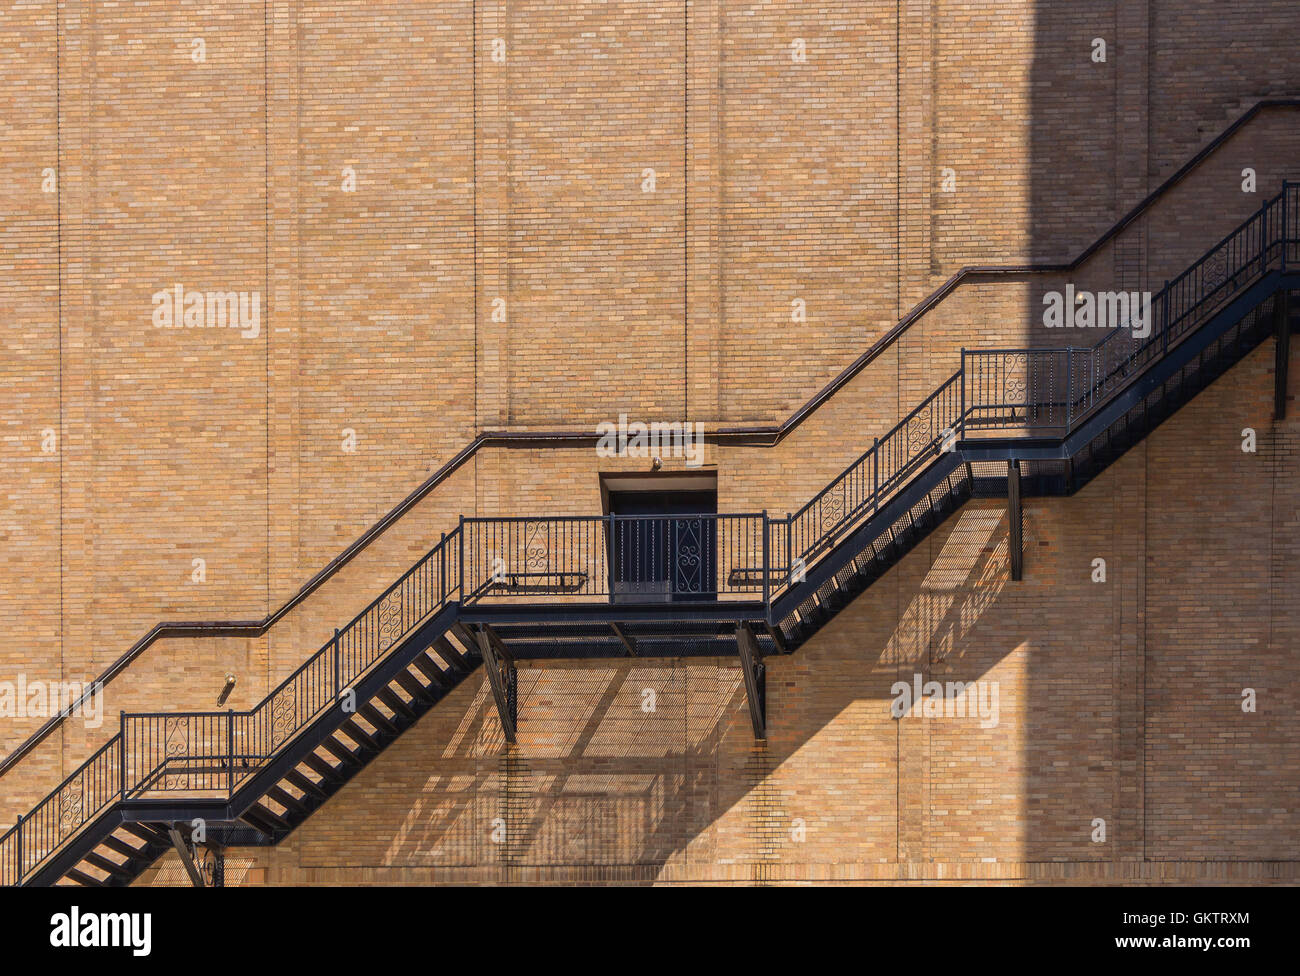 Seitenwand eines Gebäudes hergestellt aus Ziegel. Linie der Außentreppe, Tür in der Mitte. Linie von Licht und Schatten. Detroit, USA Stockfoto